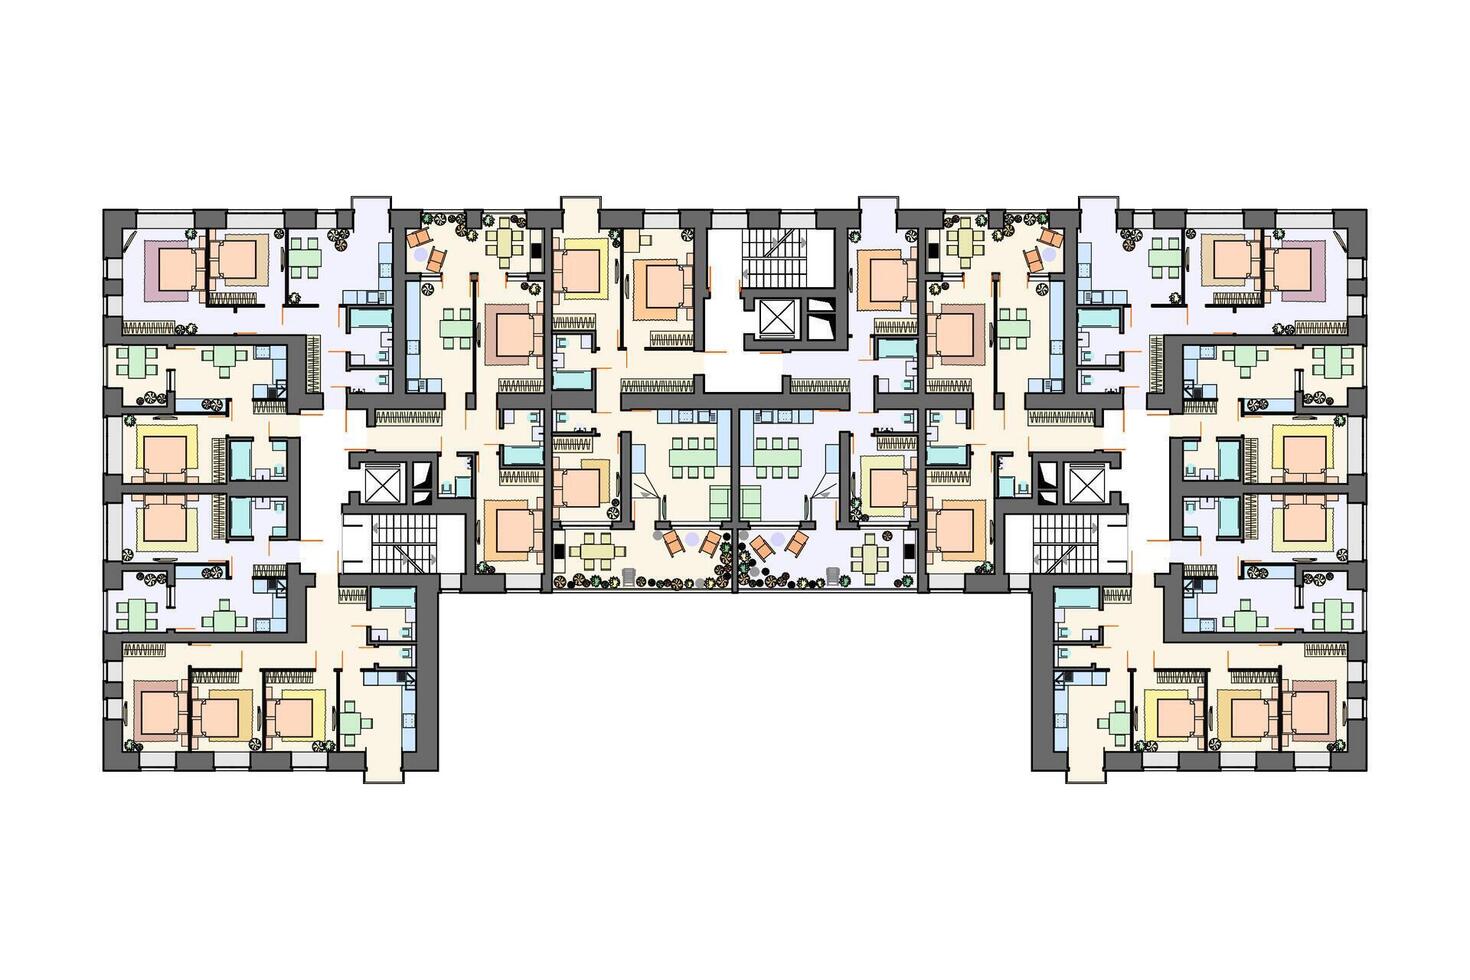 detallado arquitectónico de varios pisos edificio piso plan, Departamento disposición, Plano. vector ilustración